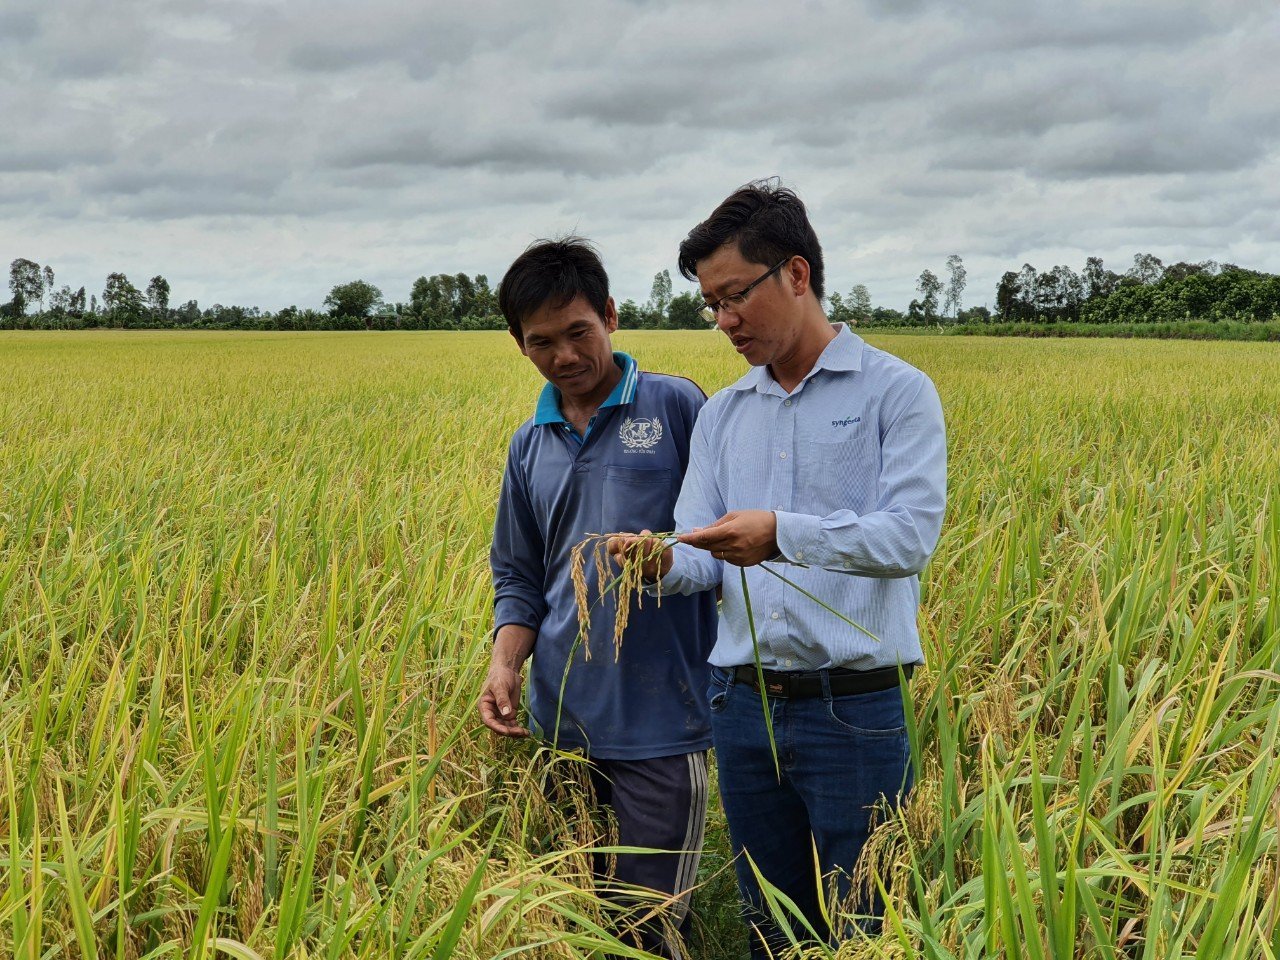 Nhân viên Syngenta hướng dẫn nông dân canh tác - Mô hình trình diễn hiệu quả kiểm soát dư lượng trong canh tác lúa do Syngenta và Olam thực hiện tại An Giang.